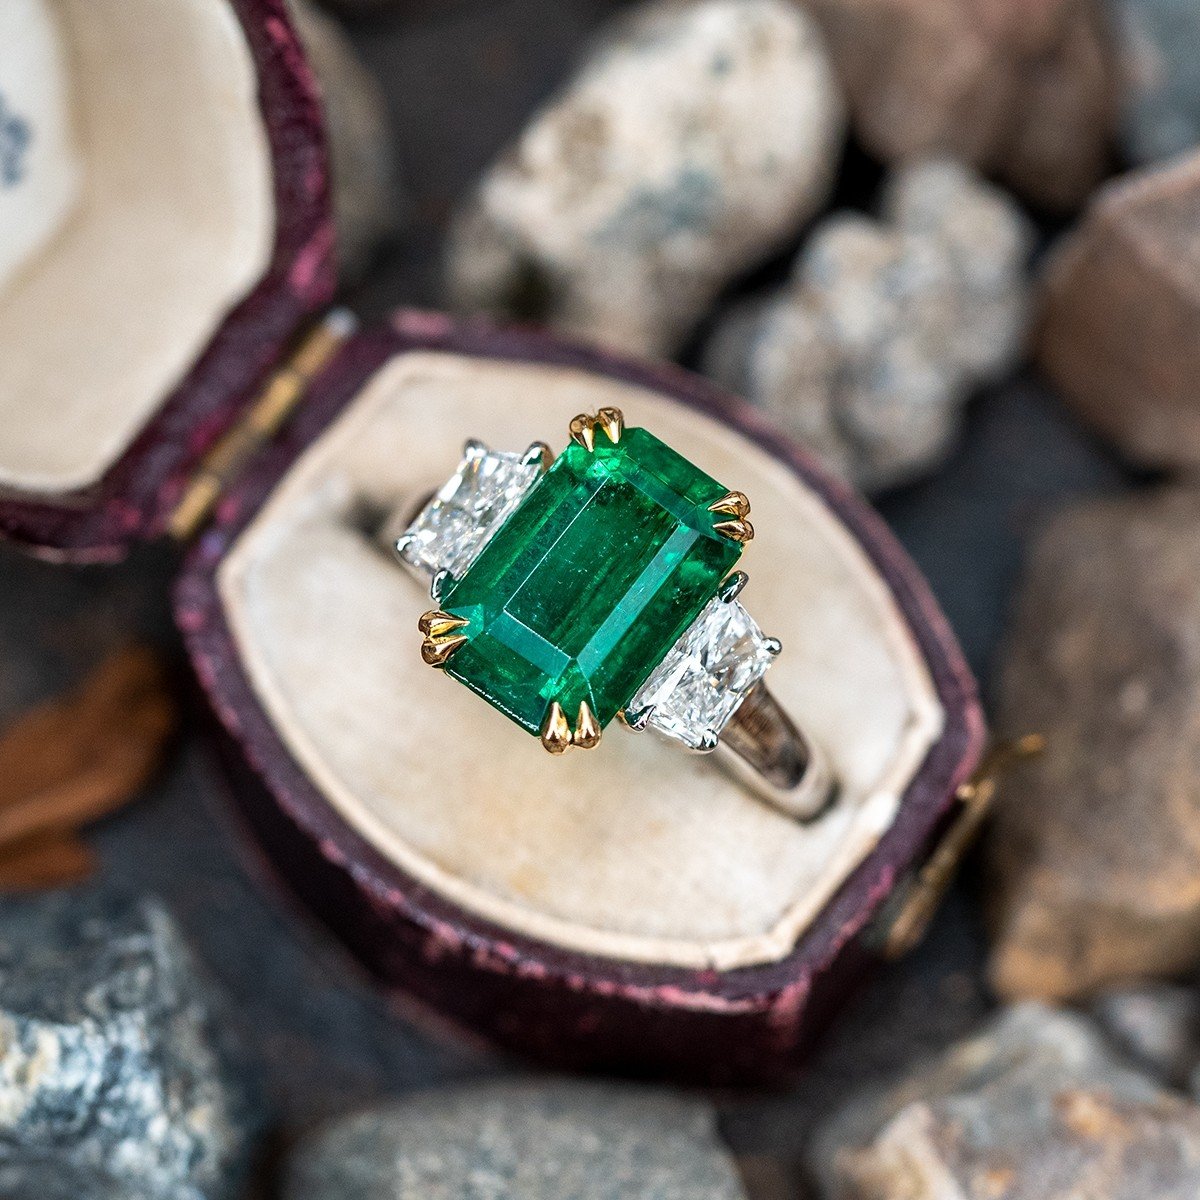 4 Carat Emerald Ring in Platinum & 18K Yellow Gold GIA